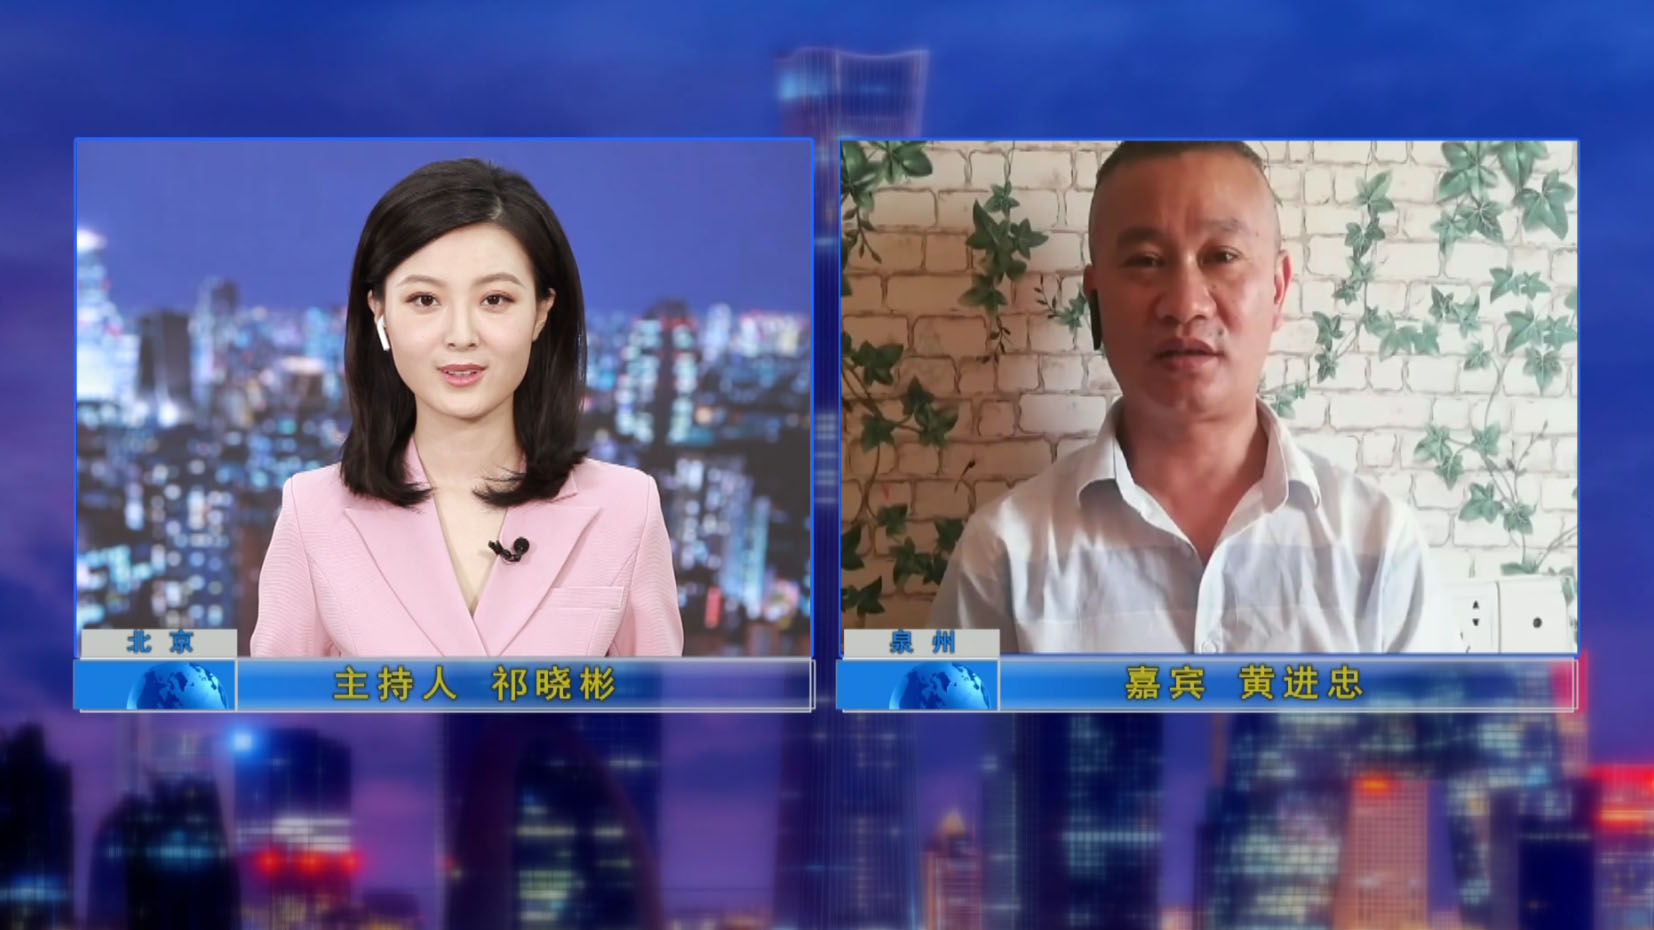 Tổng giám đốc đã được phỏng vấn bởi chương trình truyền hình "Credit China"